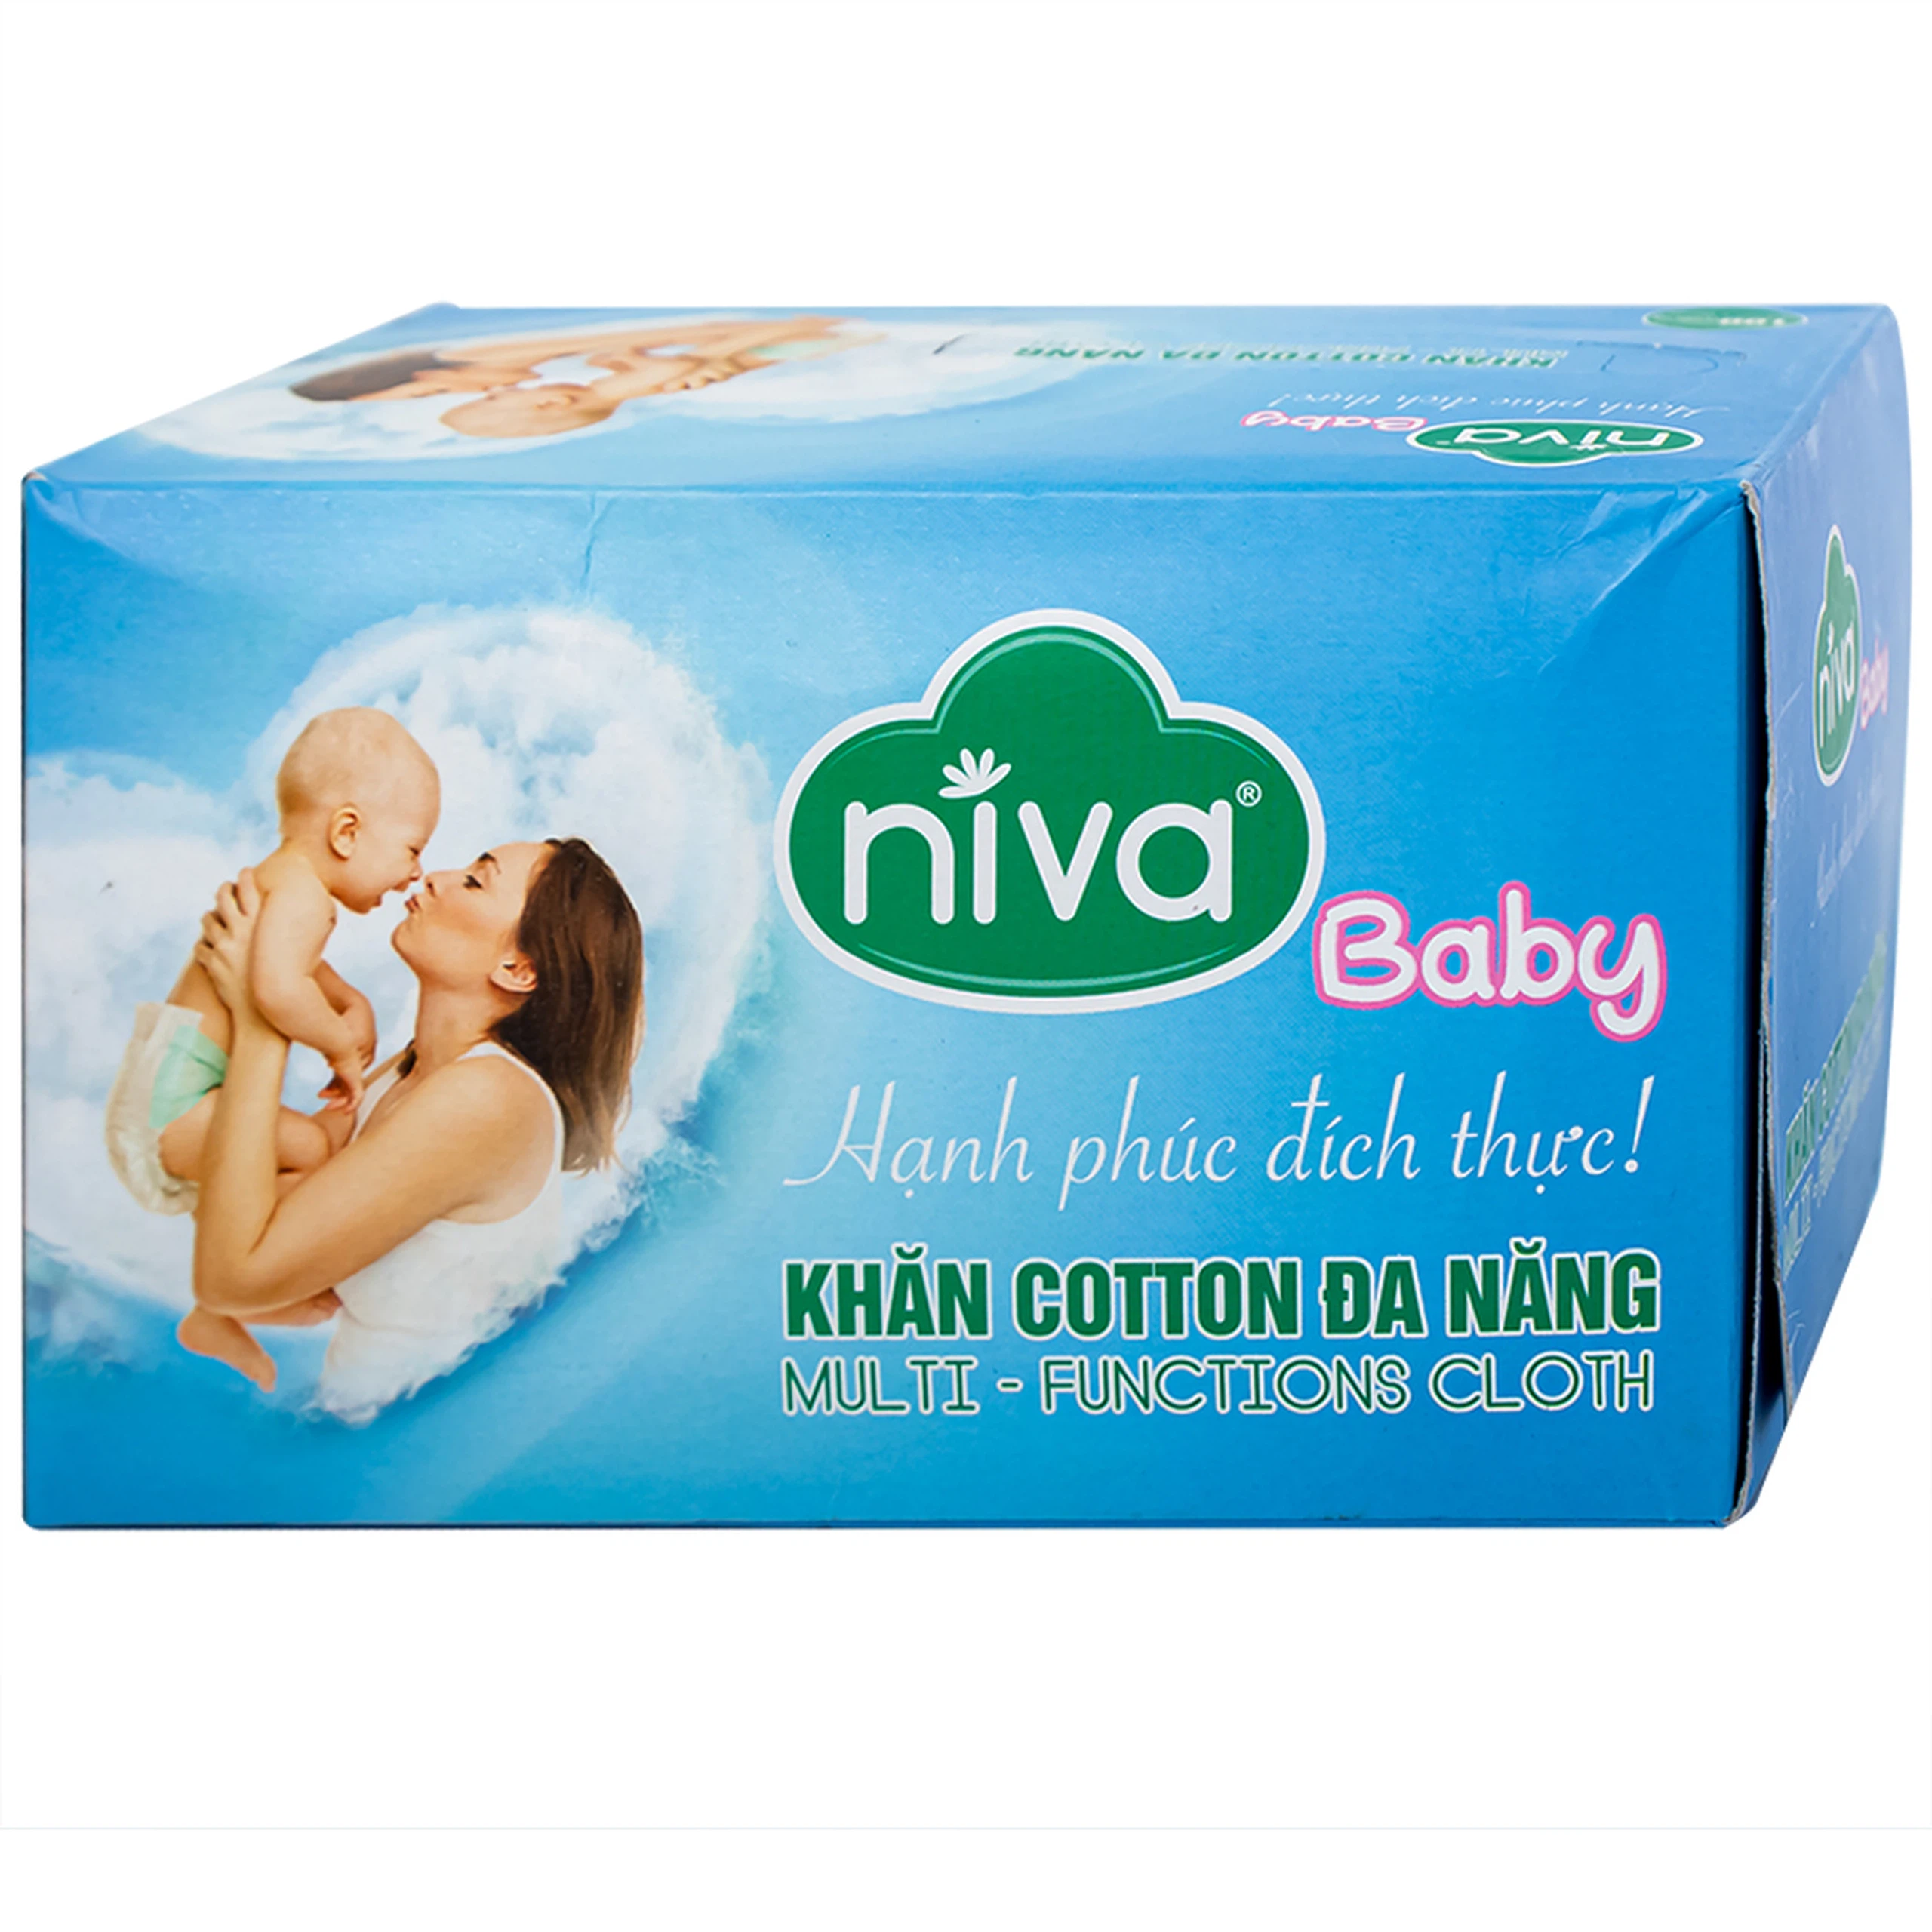 Khăn cotton Niva Baby hỗ trợ chăm sóc trẻ an toàn và tiện lợi (100 miếng)